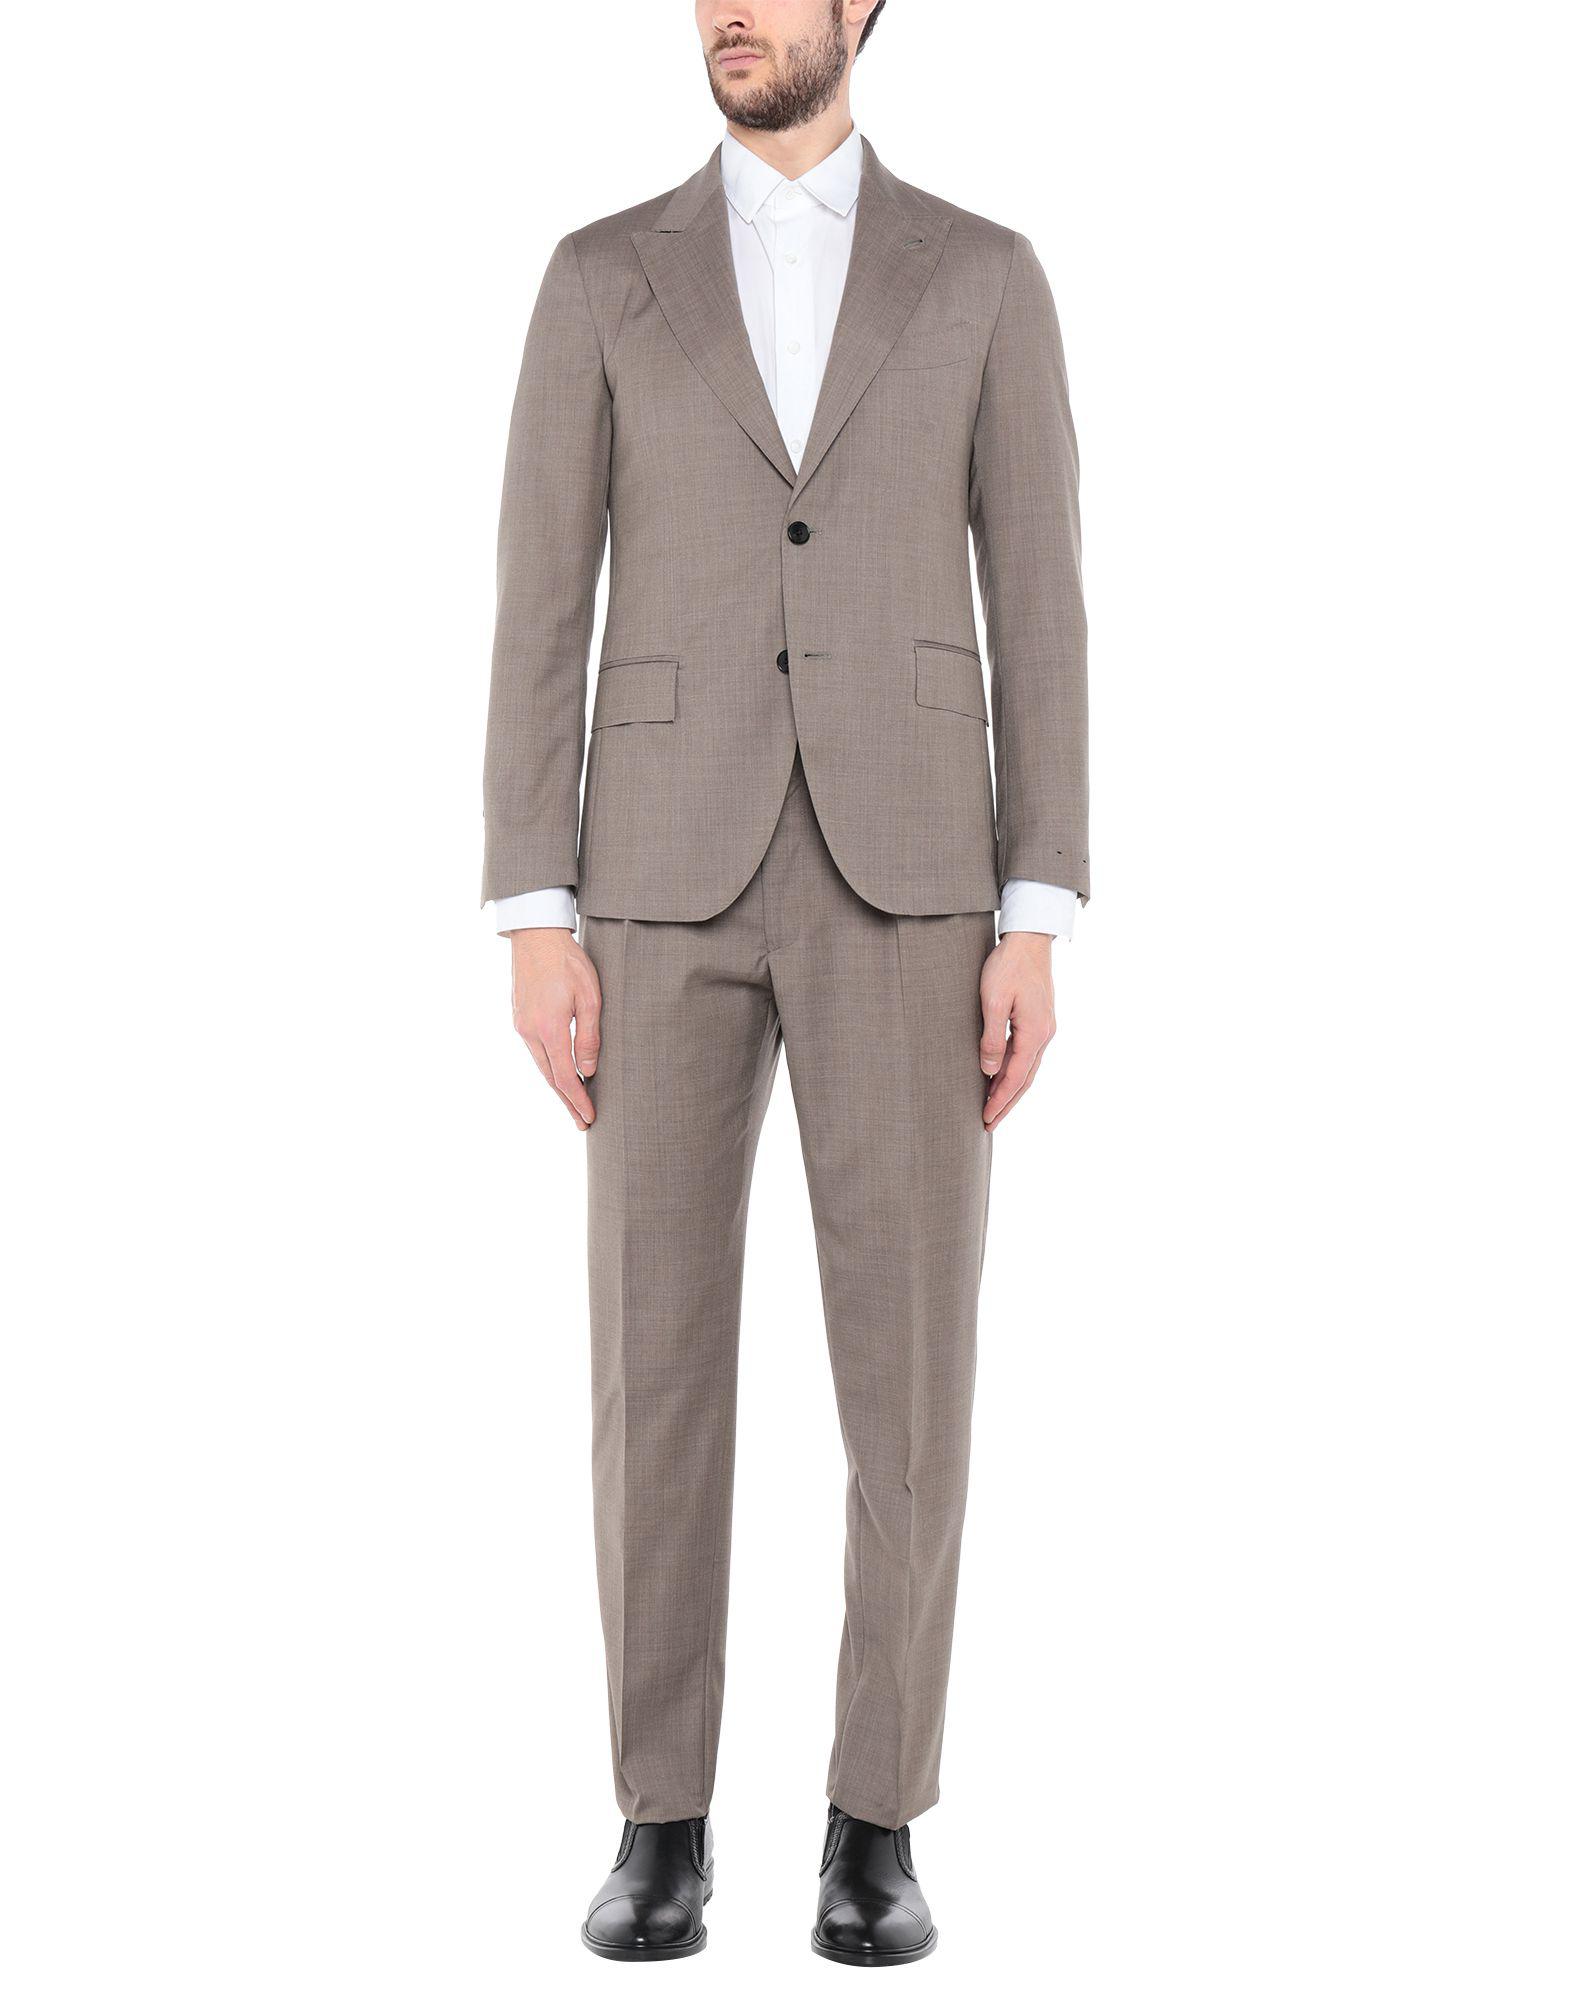 Gabriele Pasini Wool Suit in Camel (Gray) for Men - Lyst